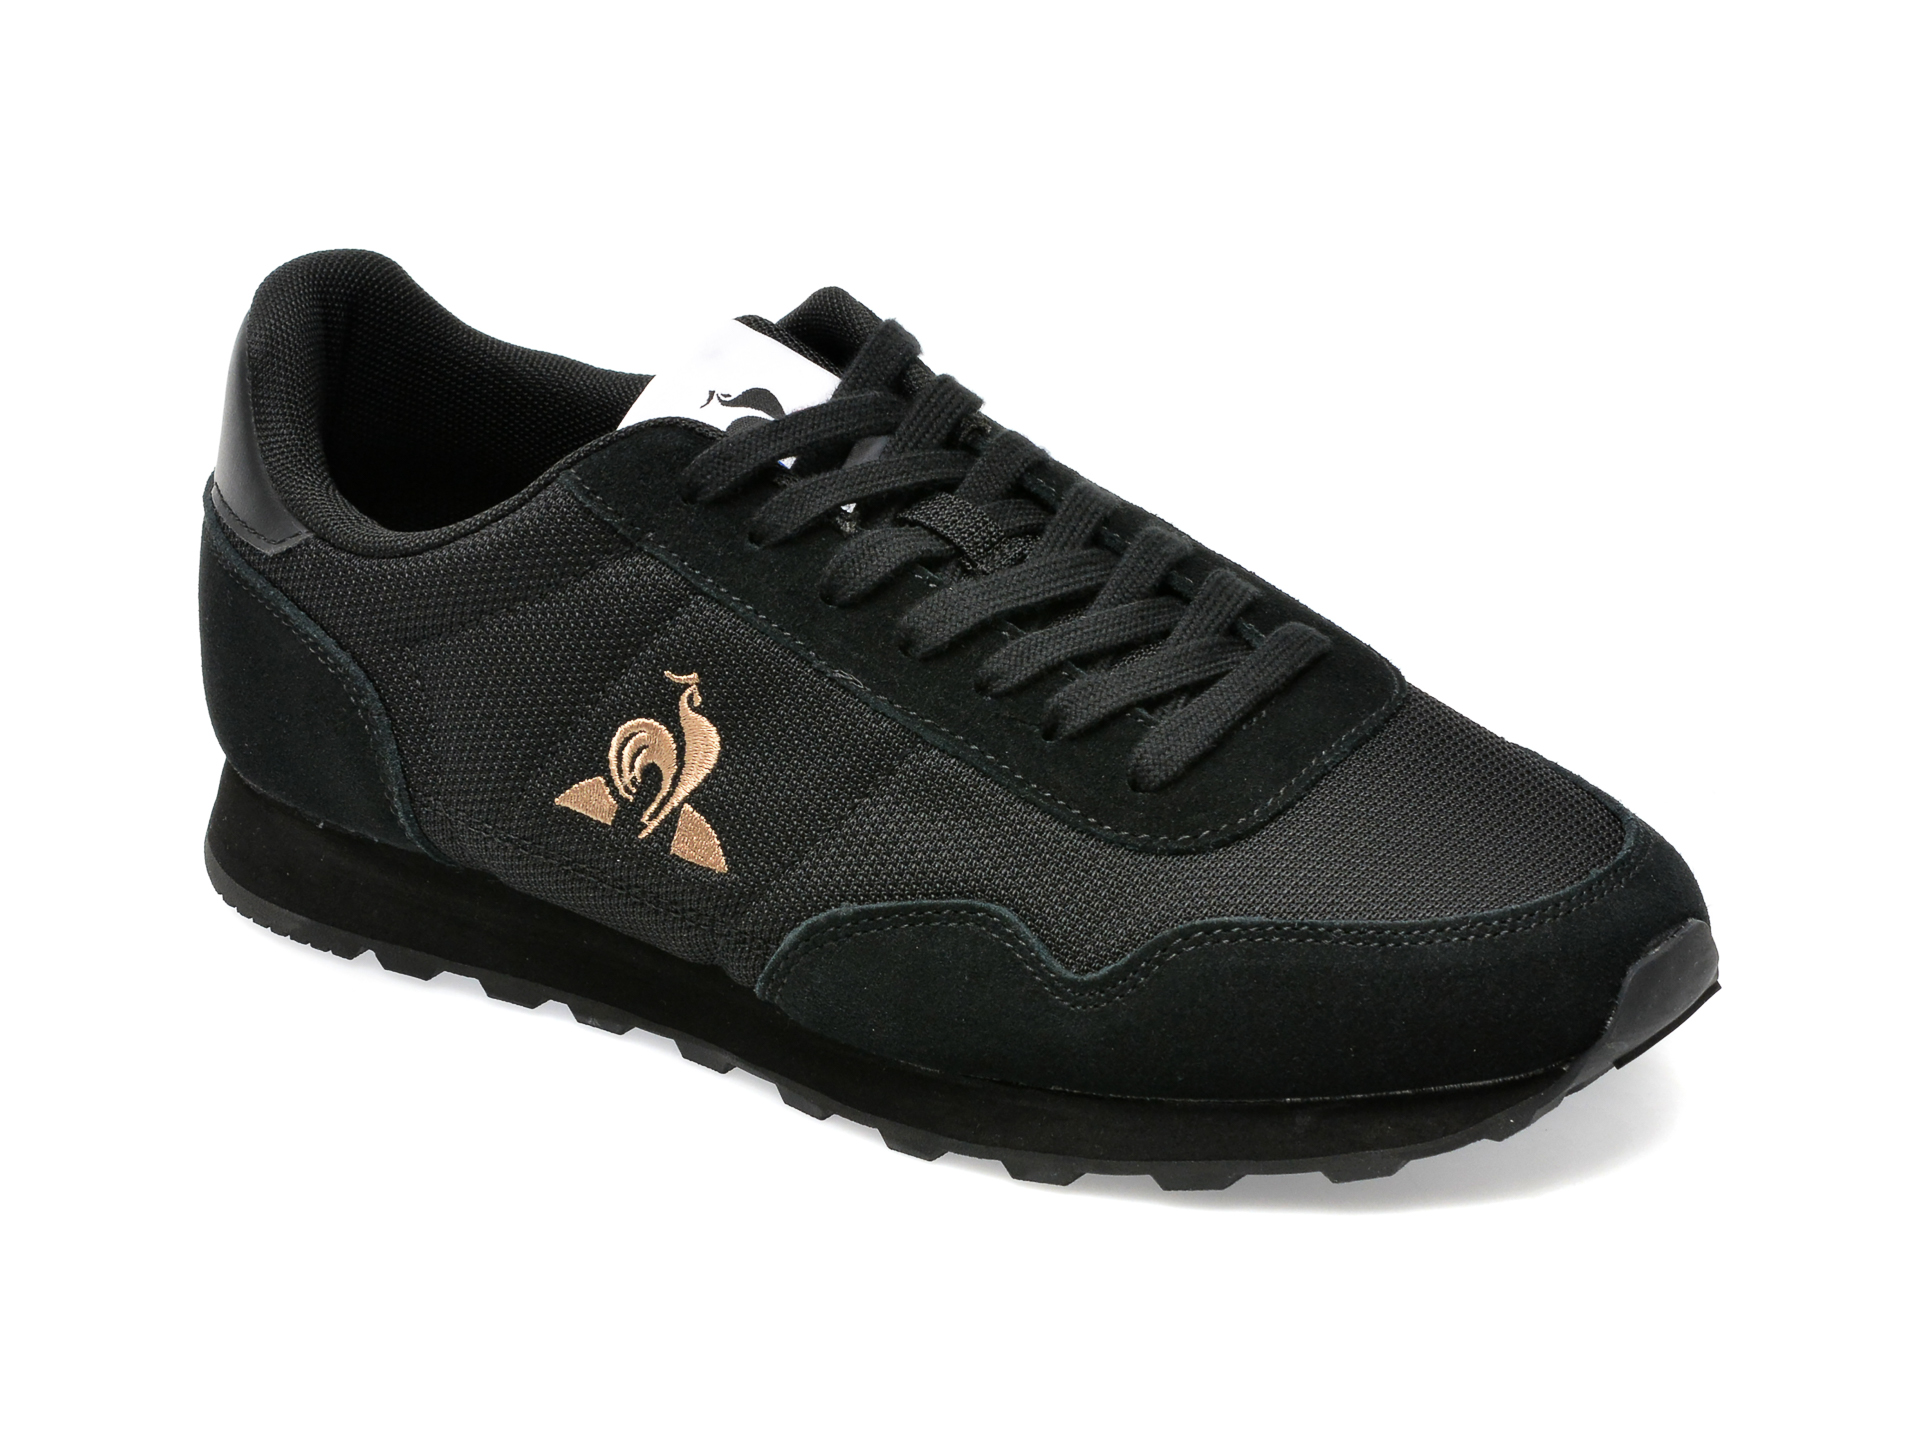 Pantofi LE COQ SPORTIF negri, 2310305, din material textil si piele intoarsa /barbati/pantofi